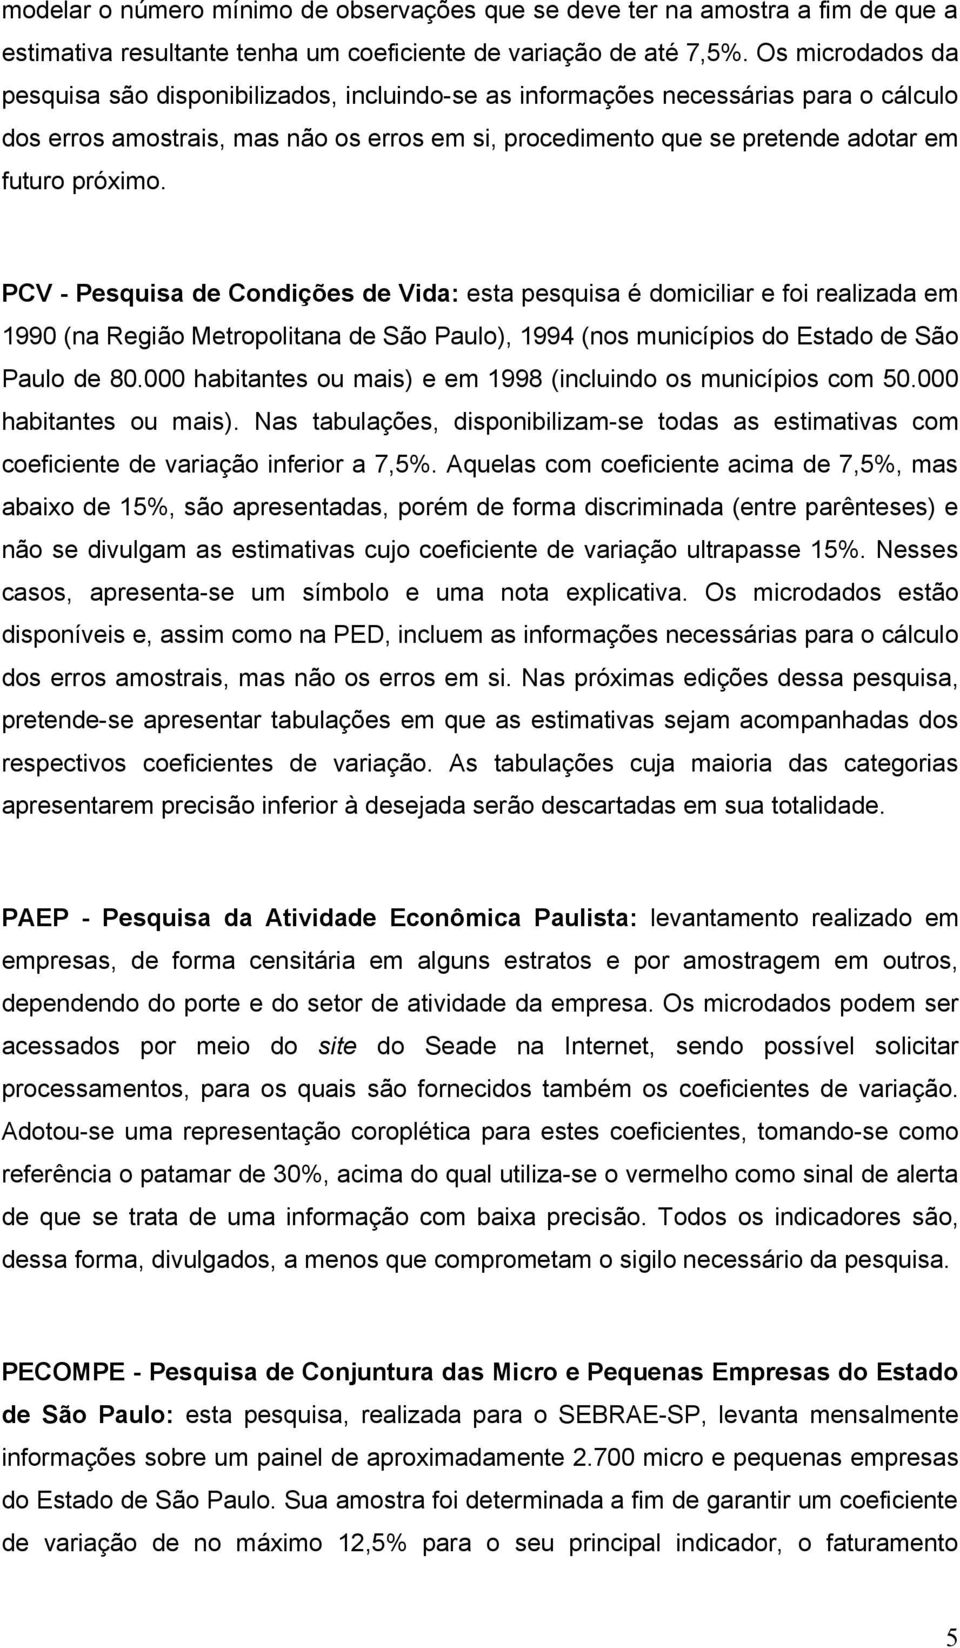 próximo. PCV - Pesquisa de Condições de Vida: esta pesquisa é domiciliar e foi realizada em 1990 (na Região Metropolitana de São Paulo), 1994 (nos municípios do Estado de São Paulo de 80.